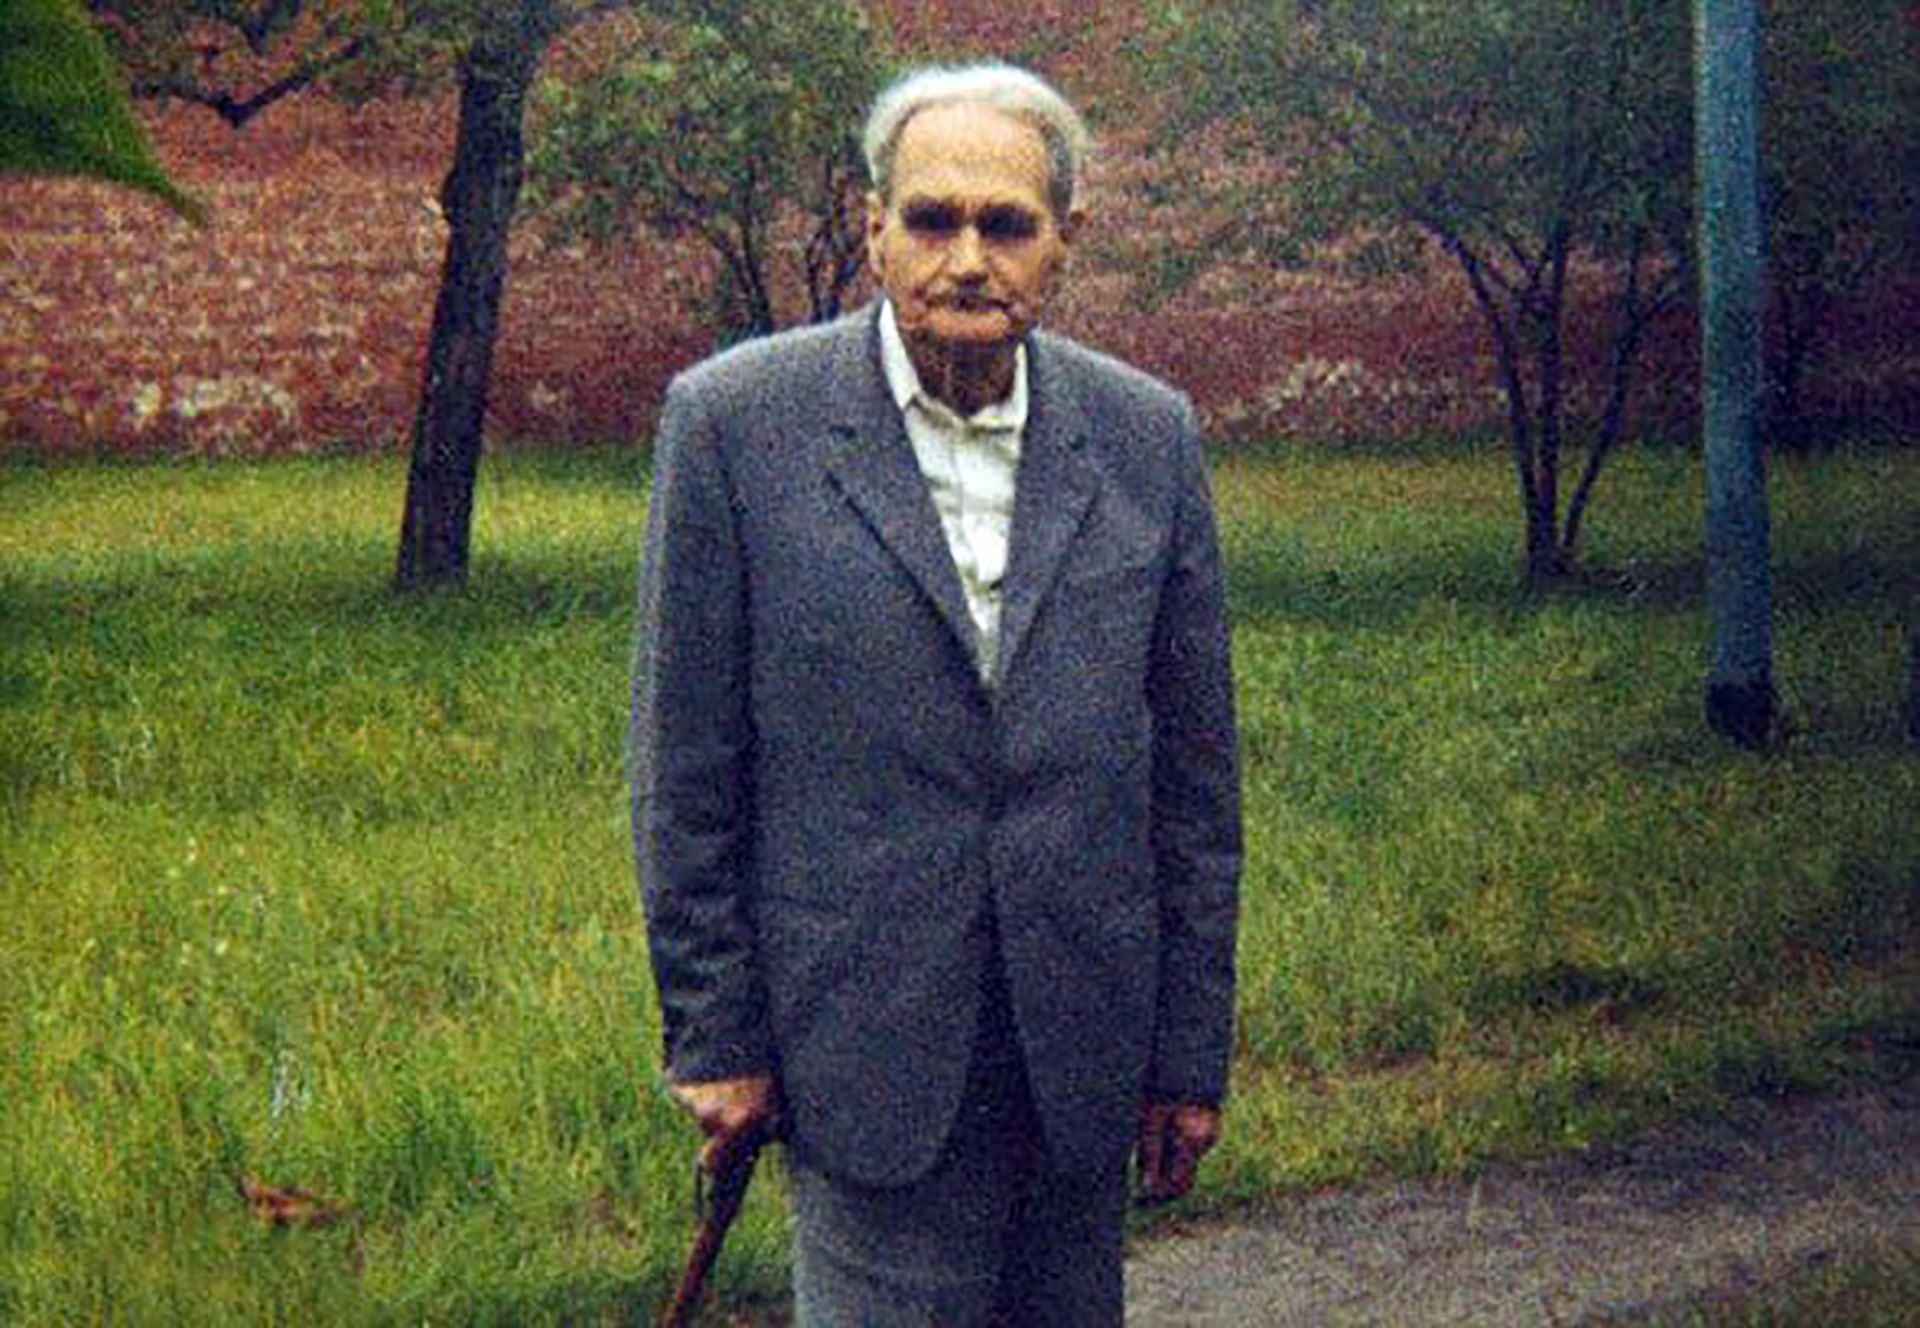 Hess estuvo recluido en Spandau el resto de su vida. Fue el último prisionero. Murió el 17 de agosto de 1987. Tenía 93 años